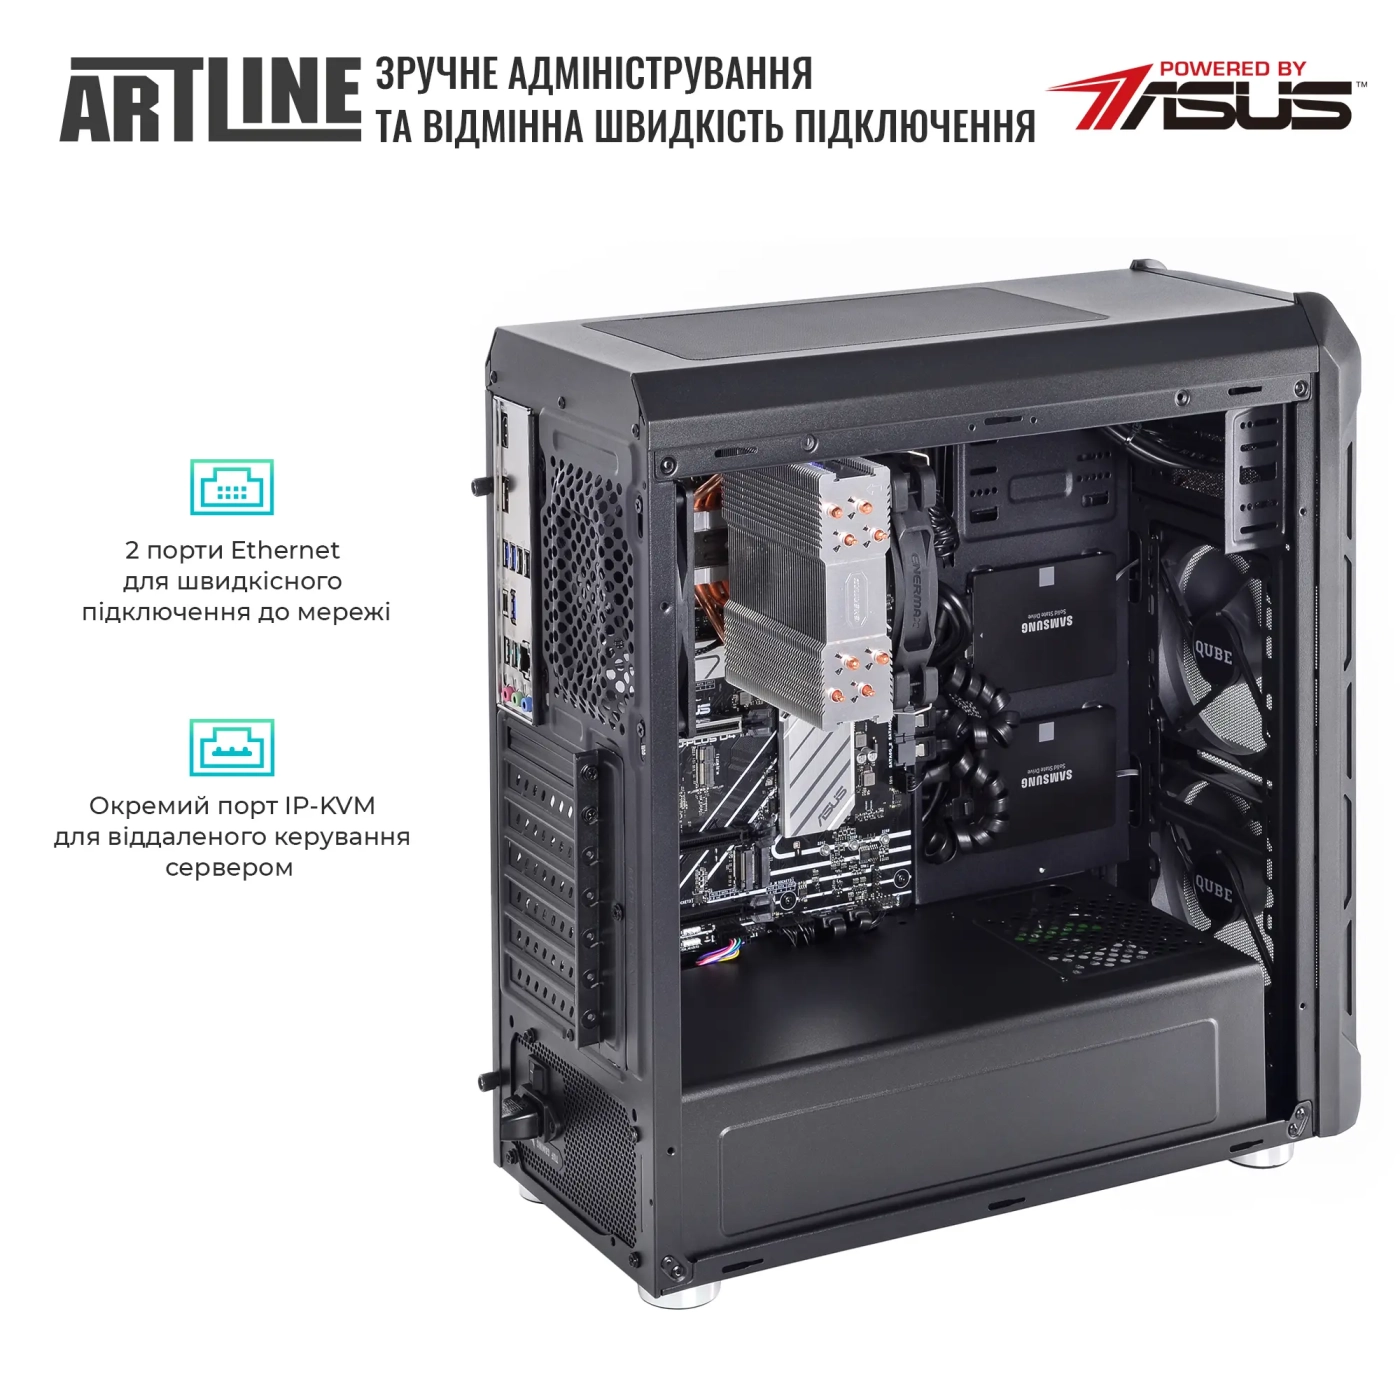 Купить Сервер ARTLINE Business T27 (T27v37) - фото 6